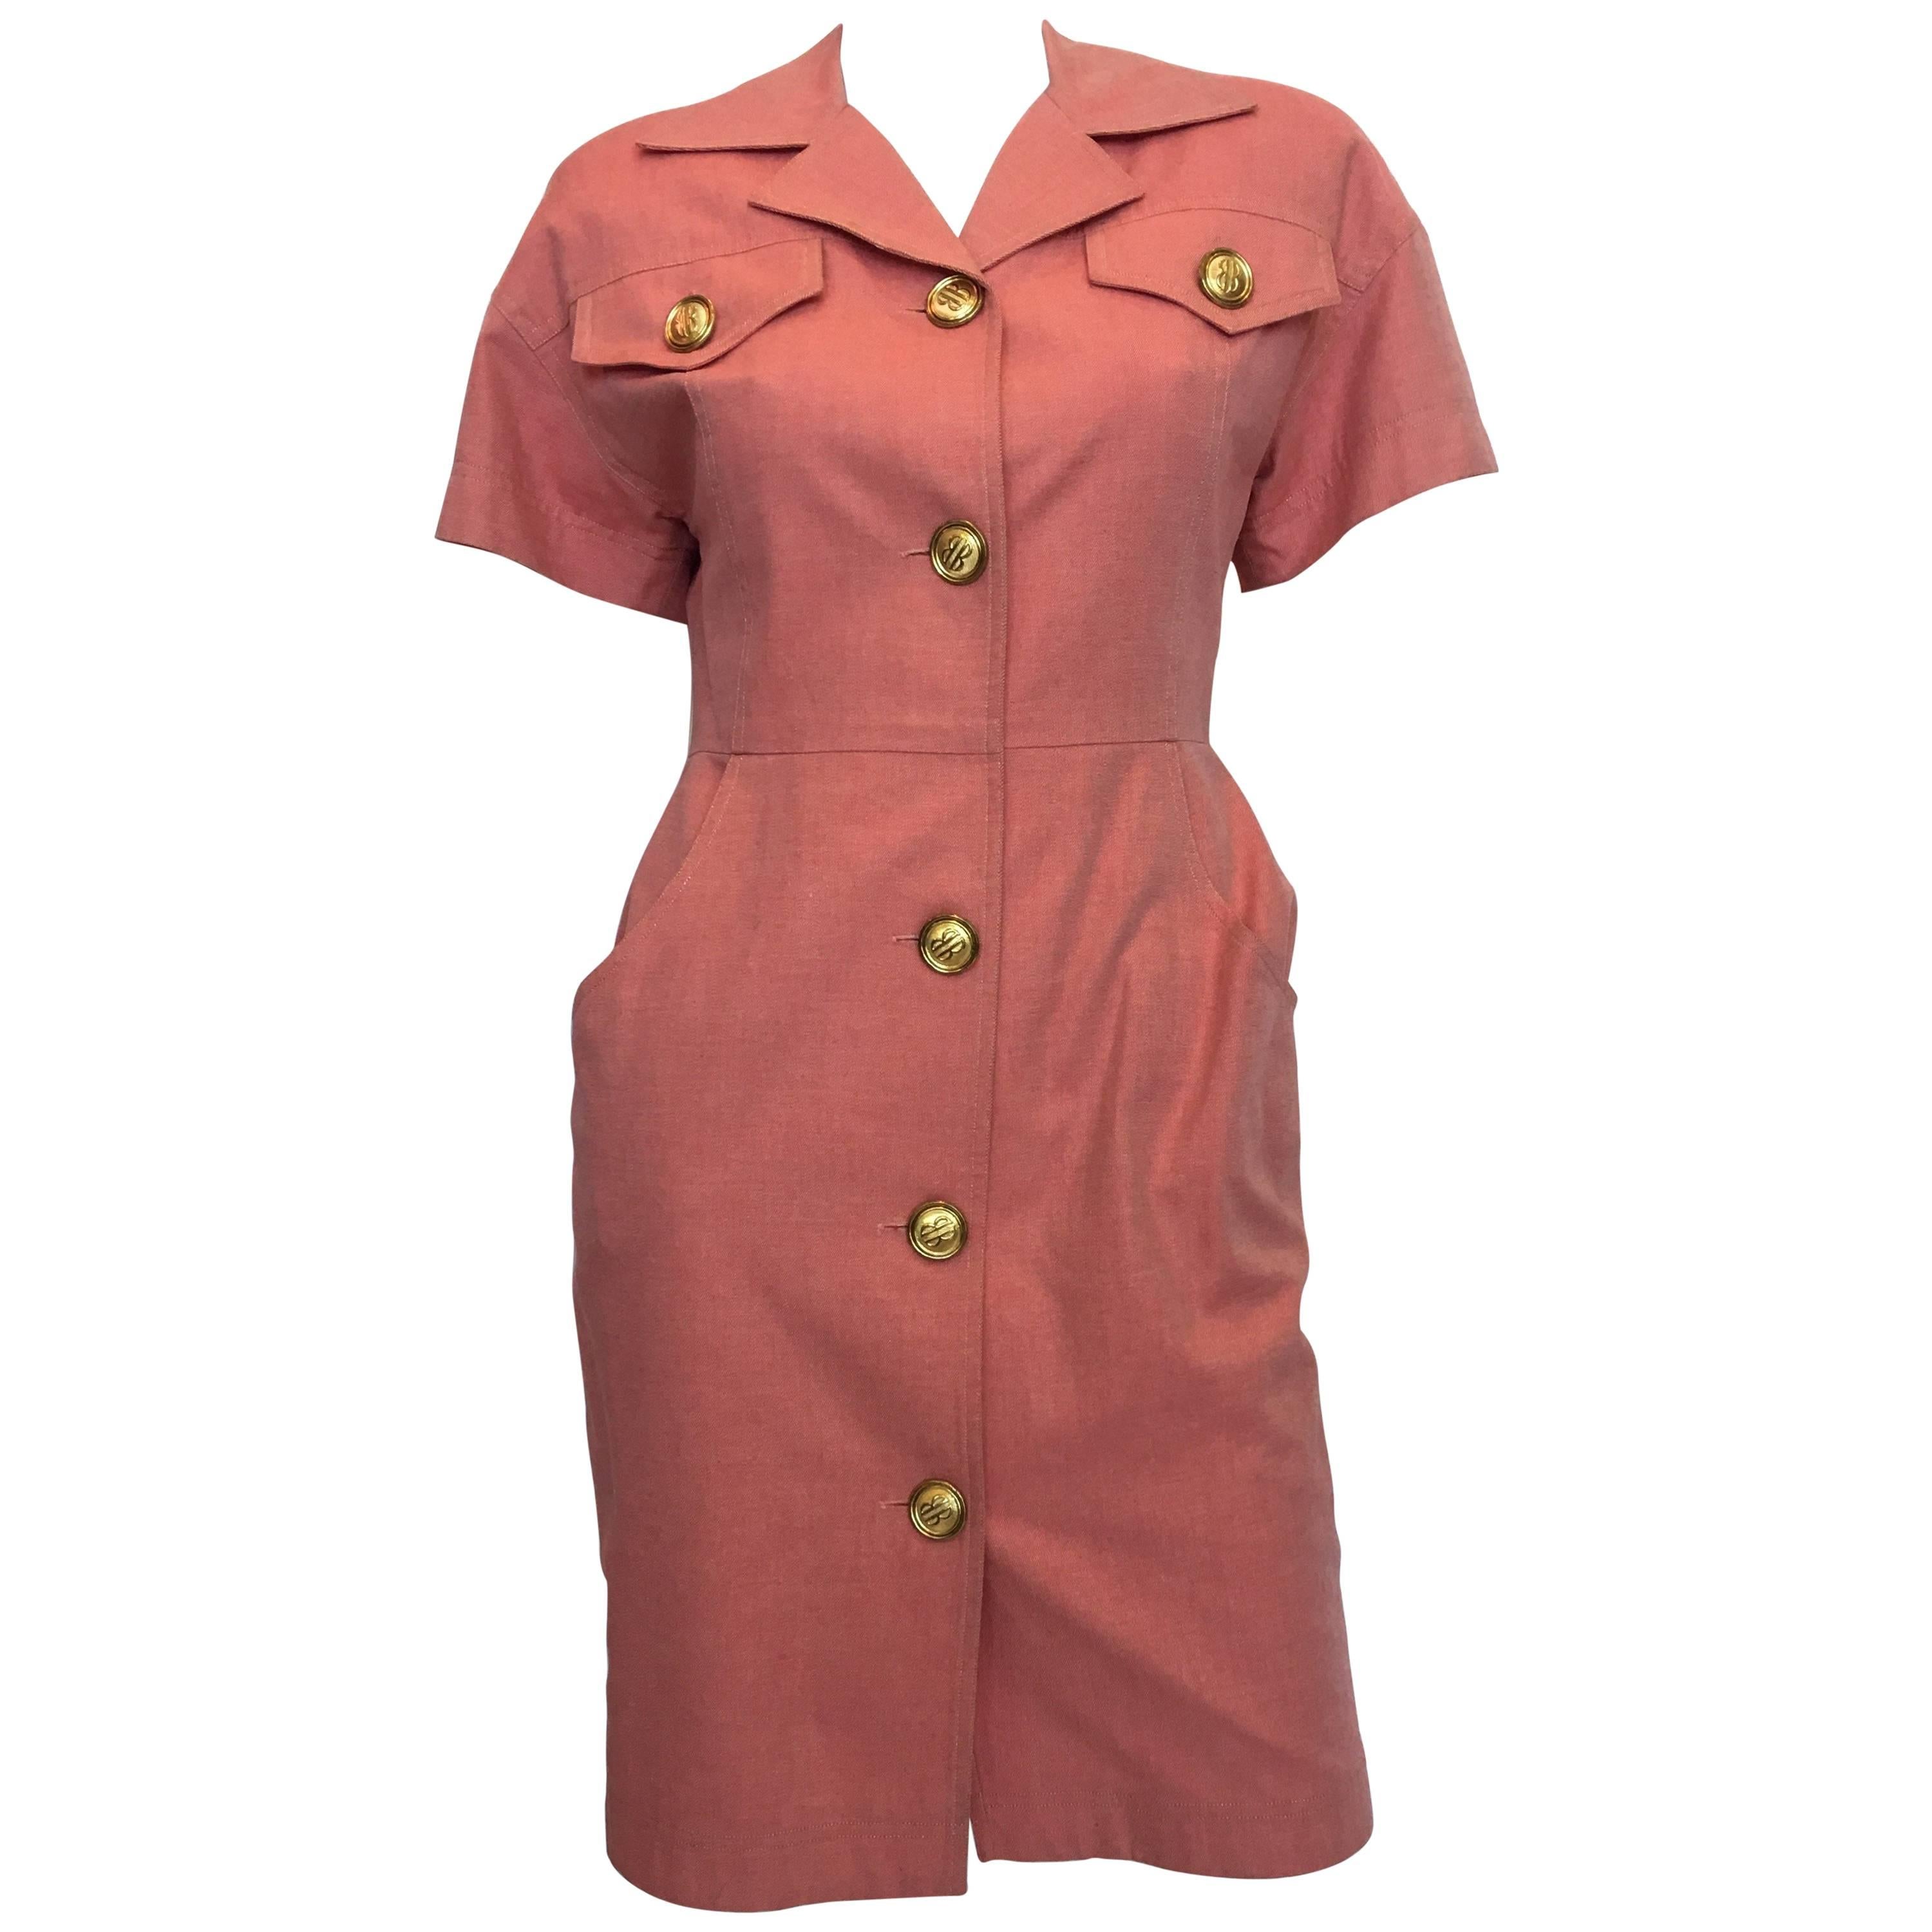 Bill Blass Salmon Pink Button Up Uniform Suit Dress, 1990s 